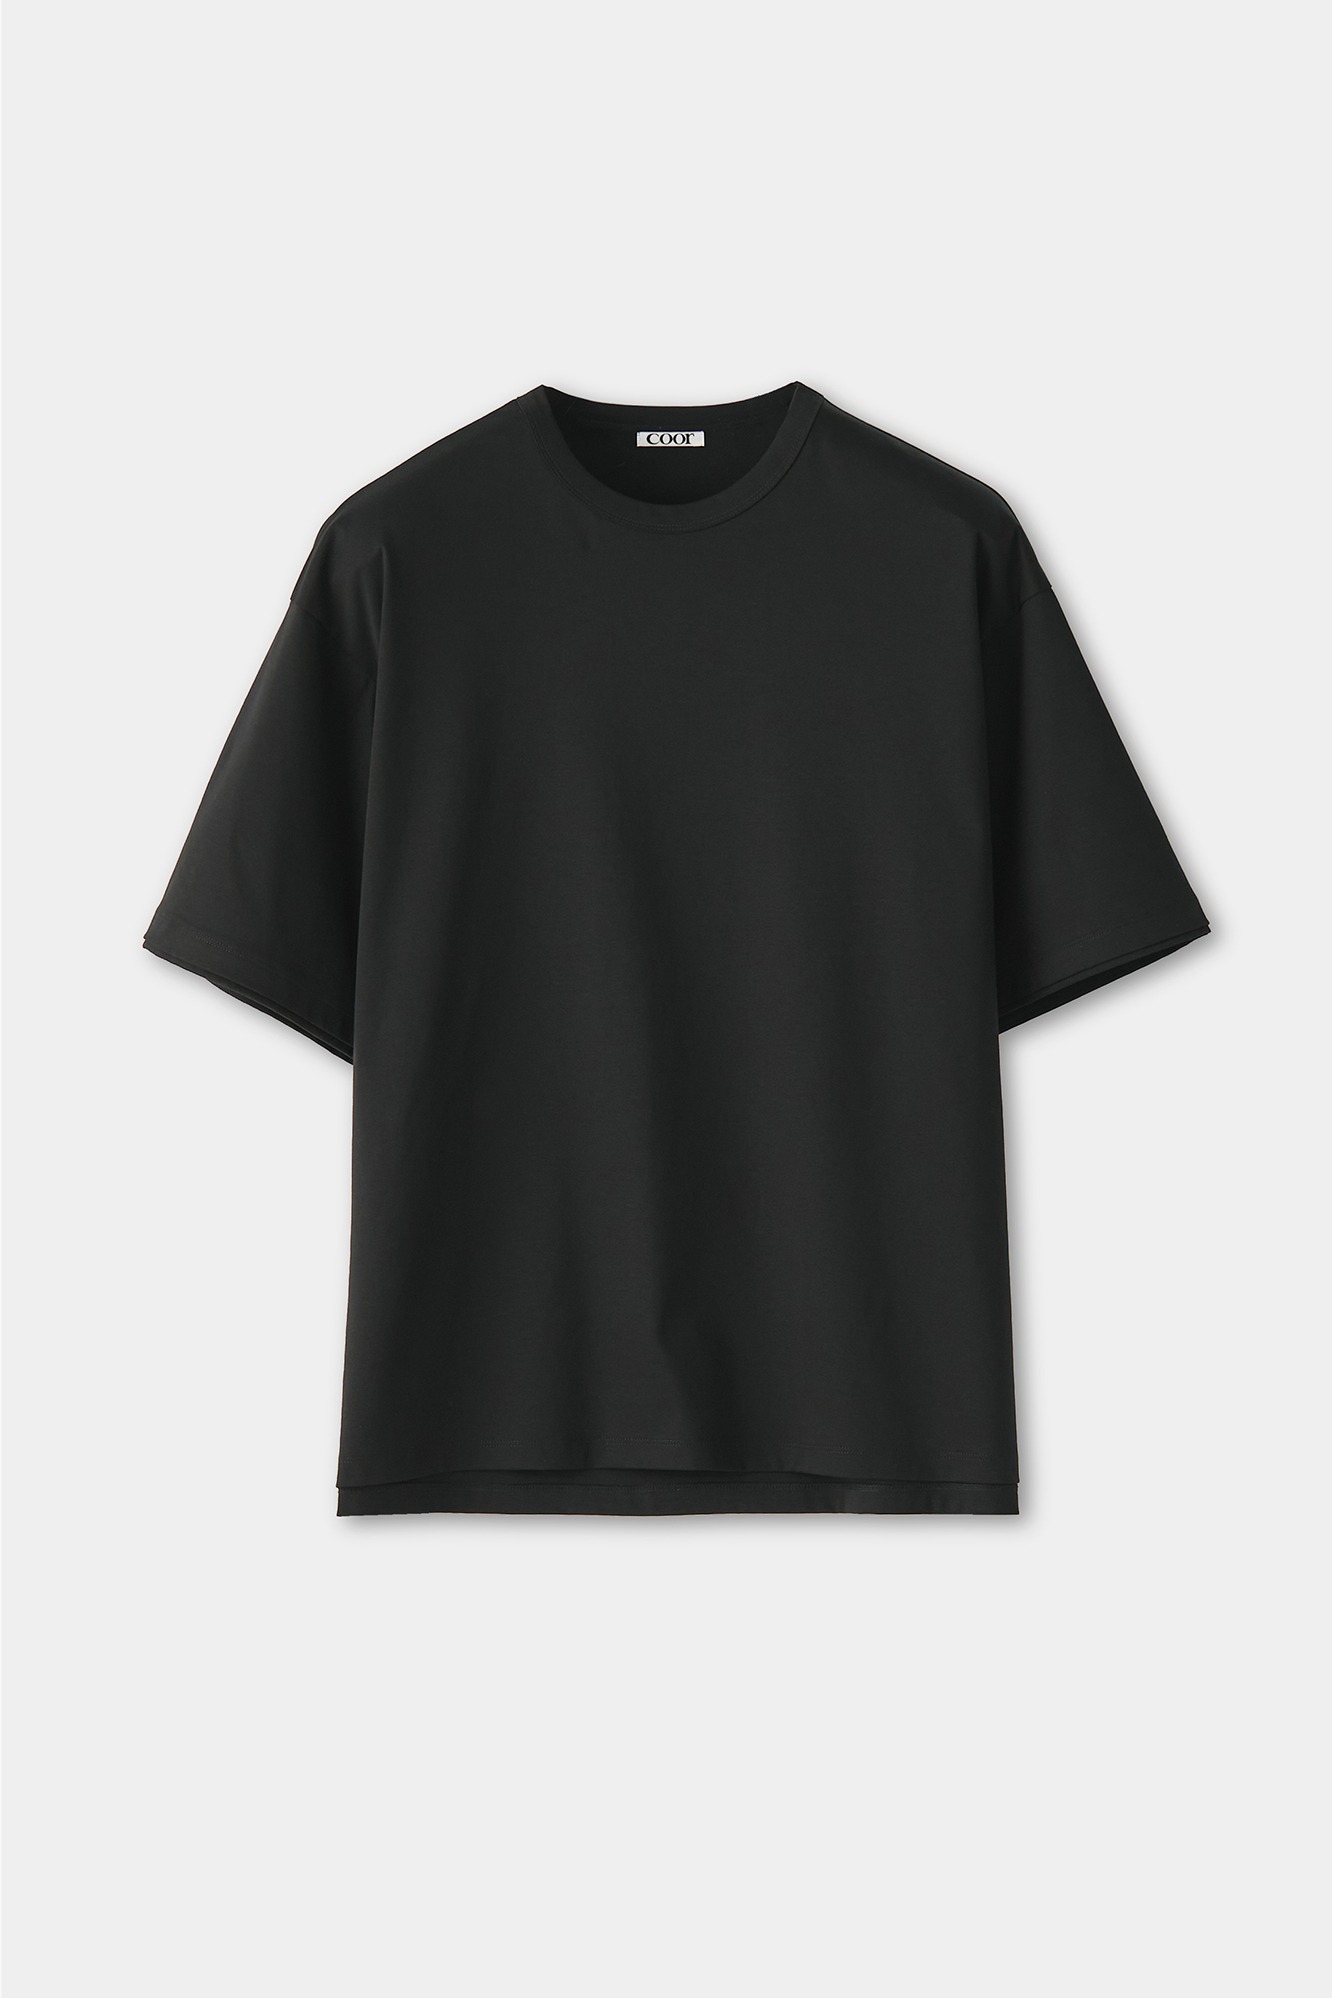 오버핏 레이어드 슬리브 티셔츠 (블랙)